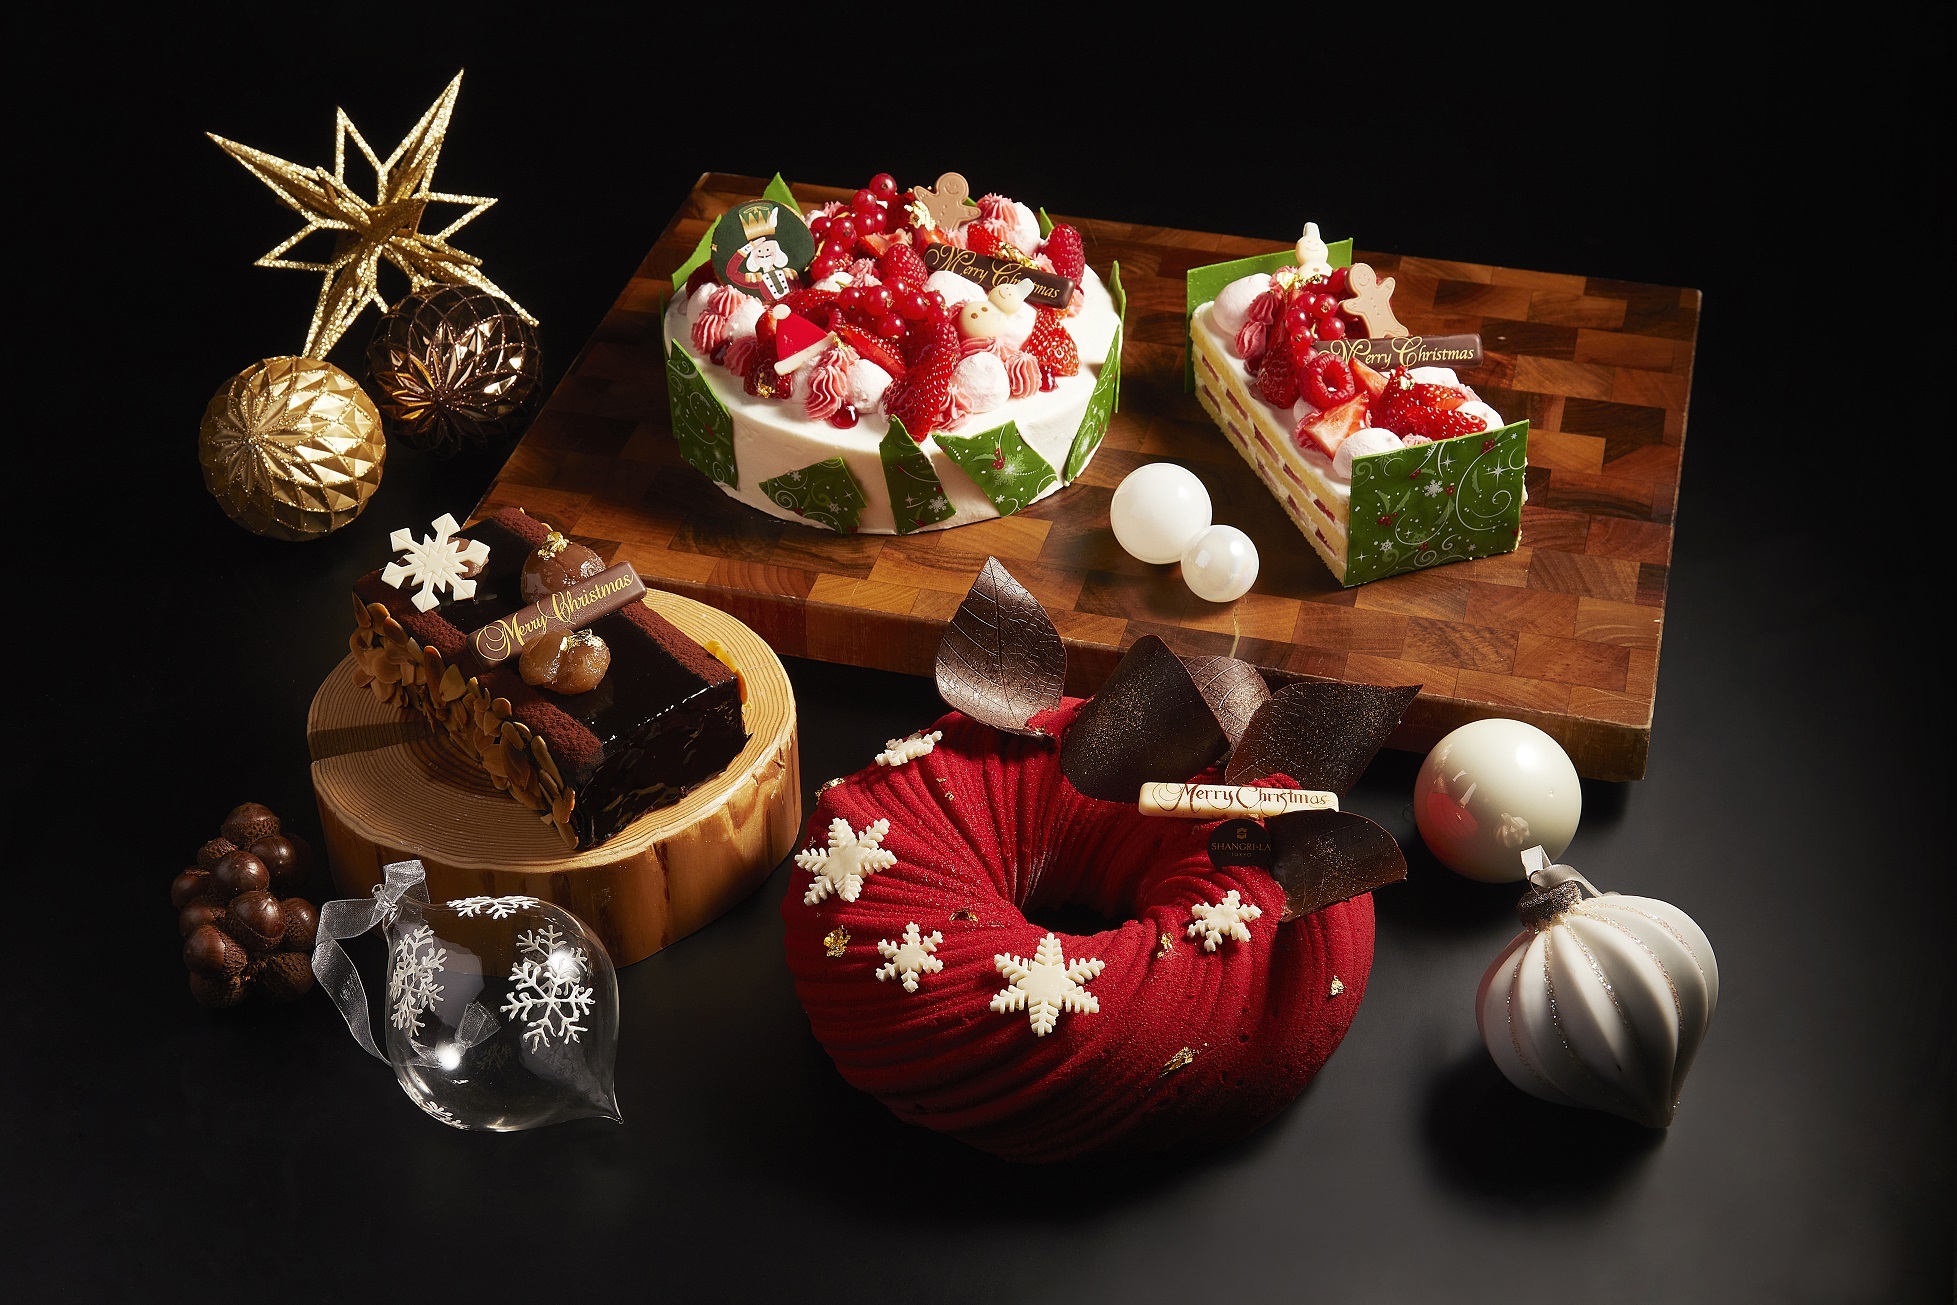 シャングリ ラ 東京が22年のクリスマスケーキやテイクアウト クリスマスアフタヌーンティー ディナーコース スイーツの予約を10月15日より開始 シャングリ ラ 東京のプレスリリース